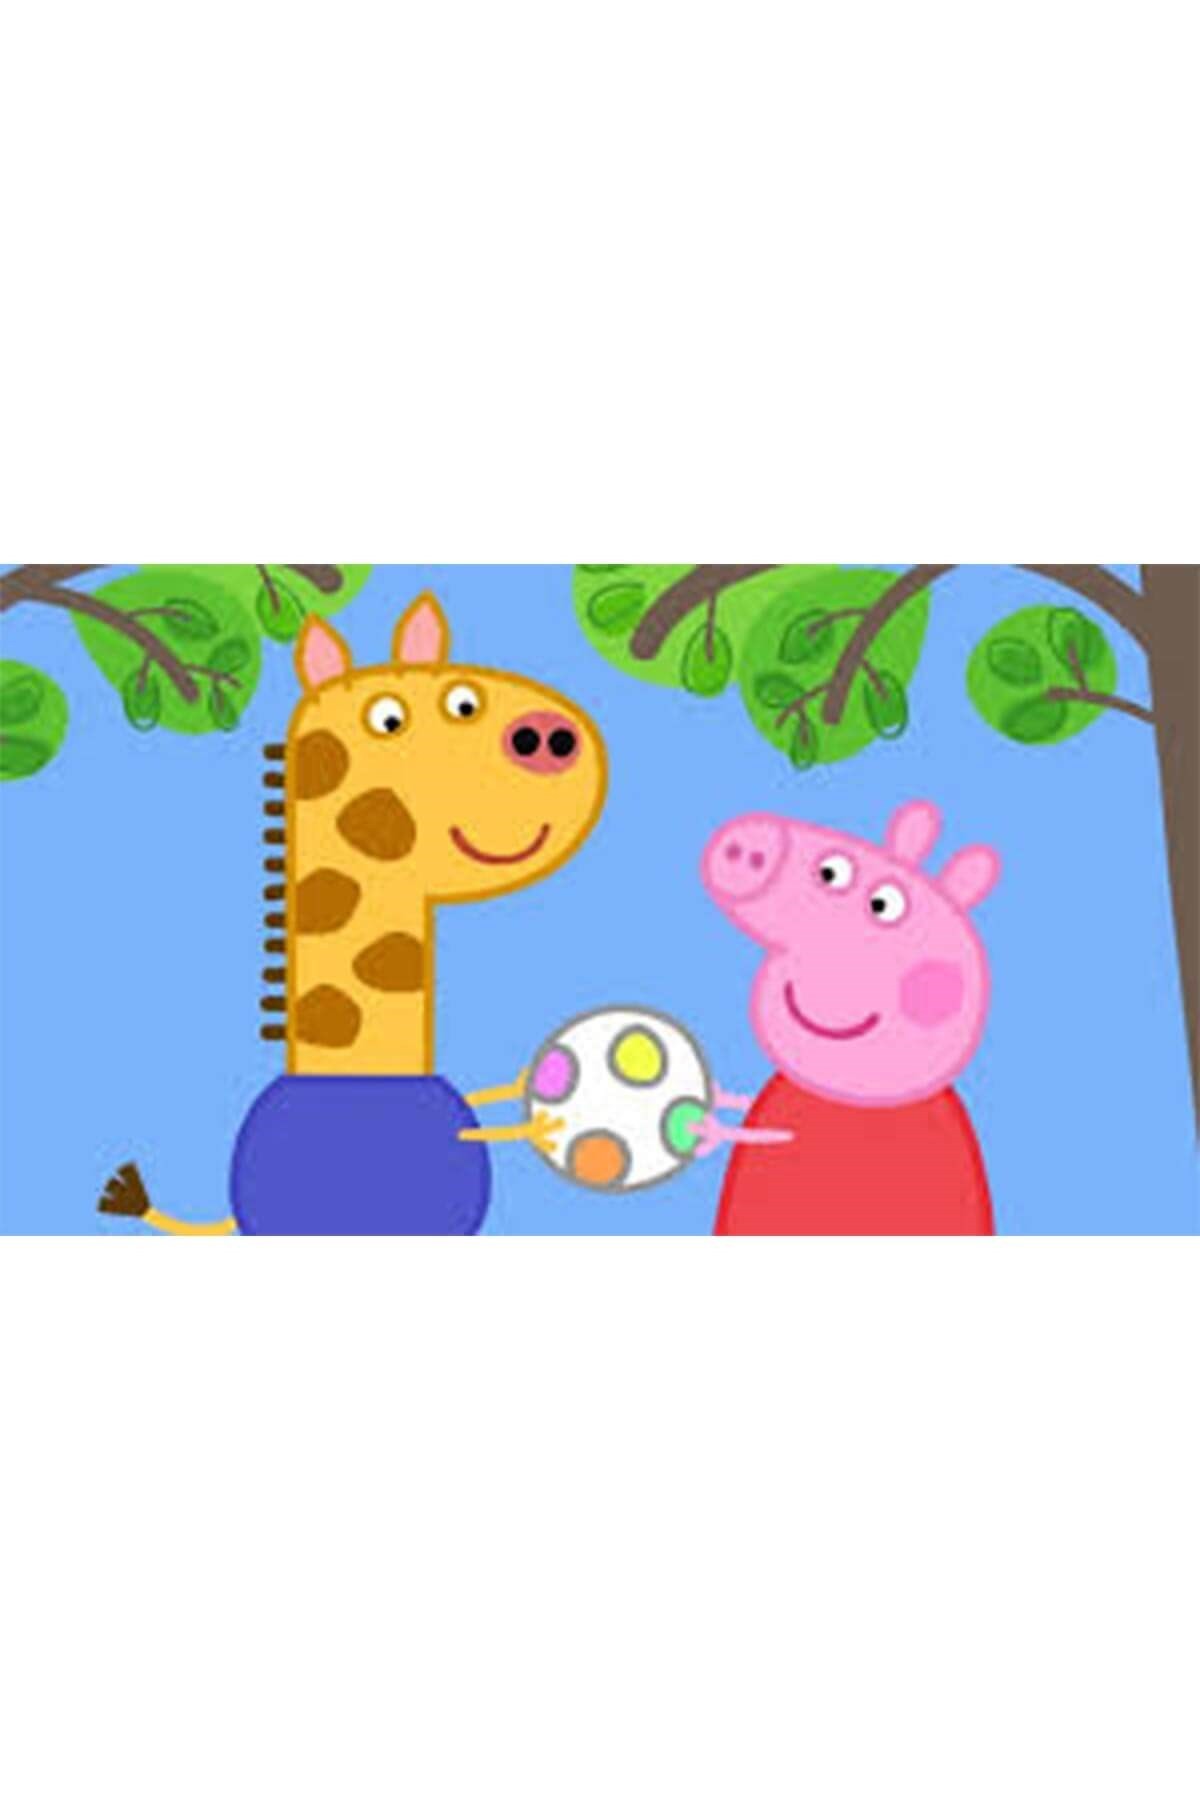 Peppa Pig: Peppa And Friends